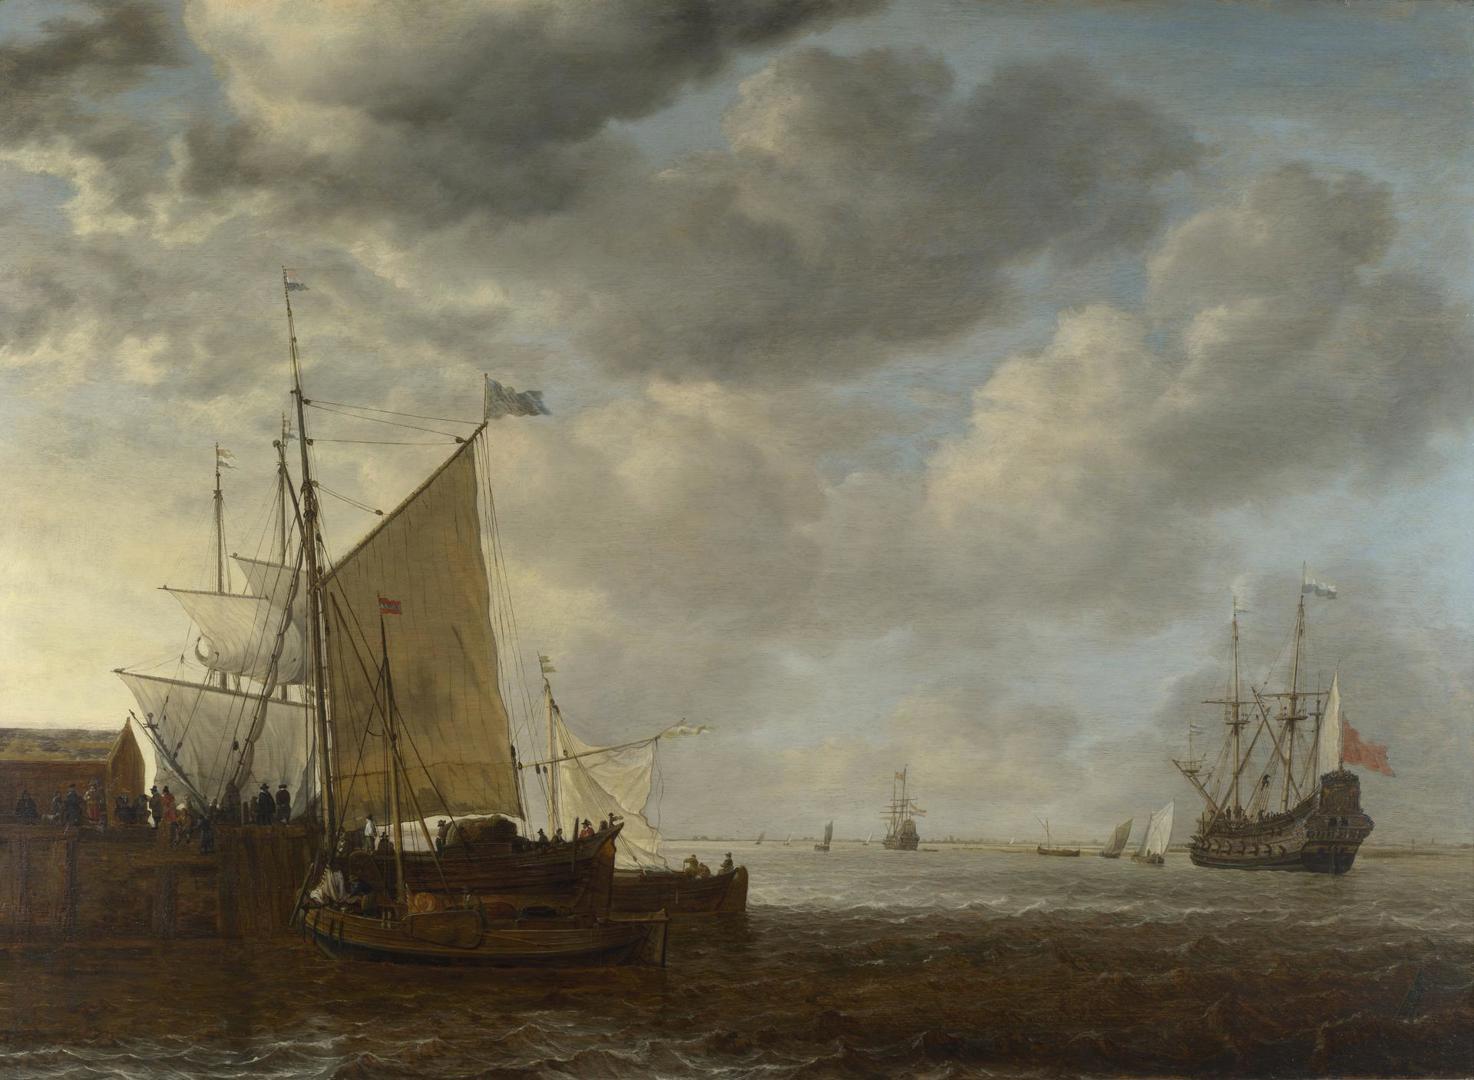 A View of an Estuary by Simon de Vlieger